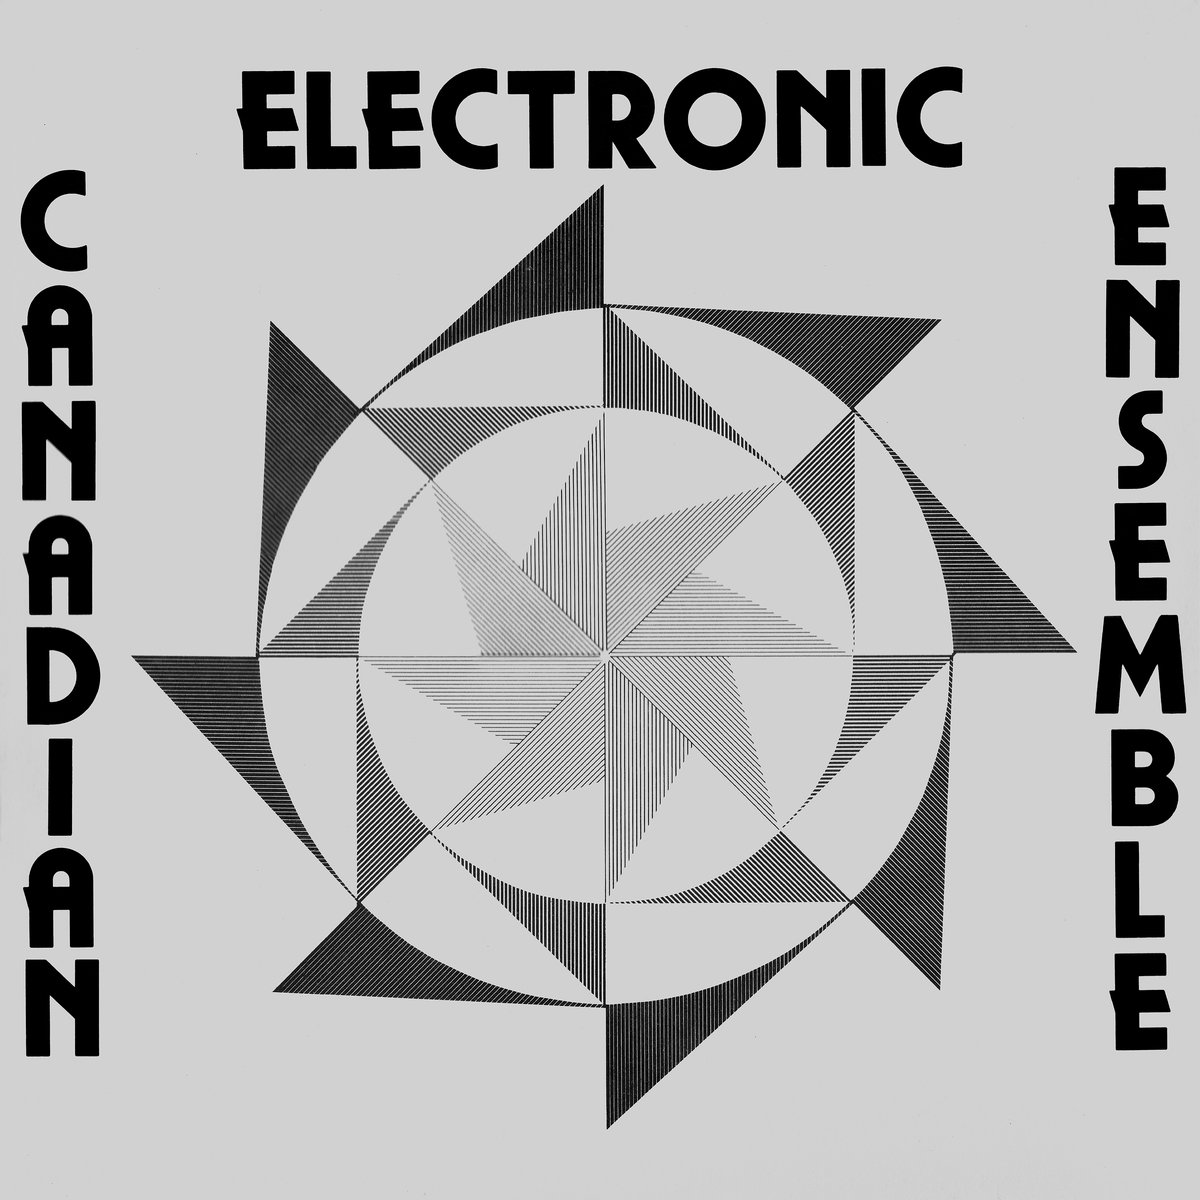 Canadian Electronic Ensemble – Canadian Electronic Ensemble (1977/2019) [FLAC 24bit/192kHz]